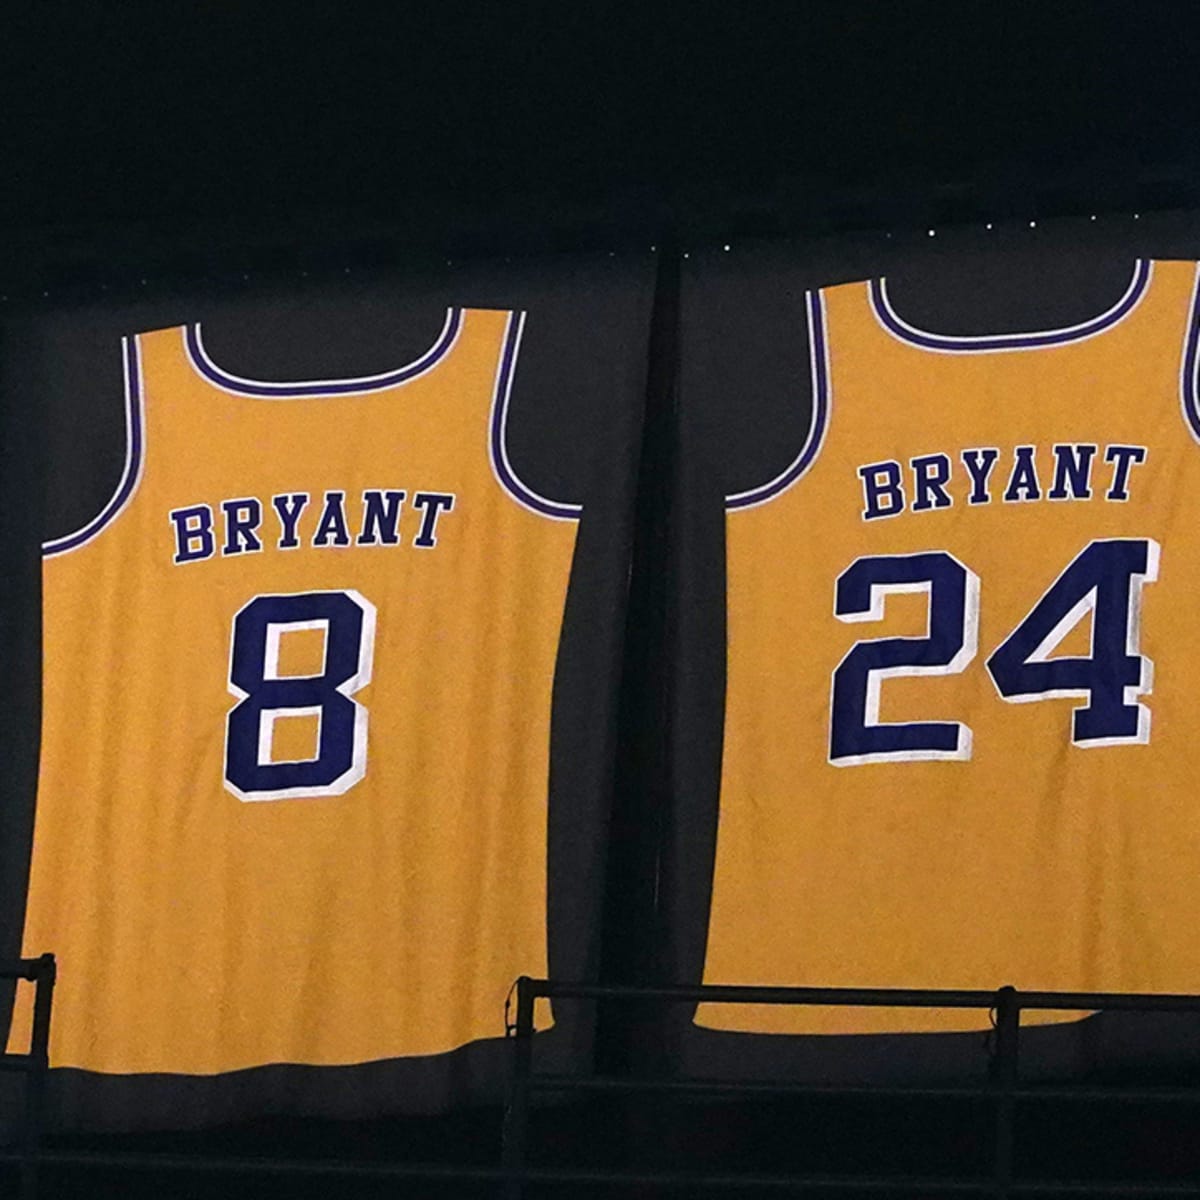 Kobe Bryant Jerseys for sale in Wayzata, Minnesota